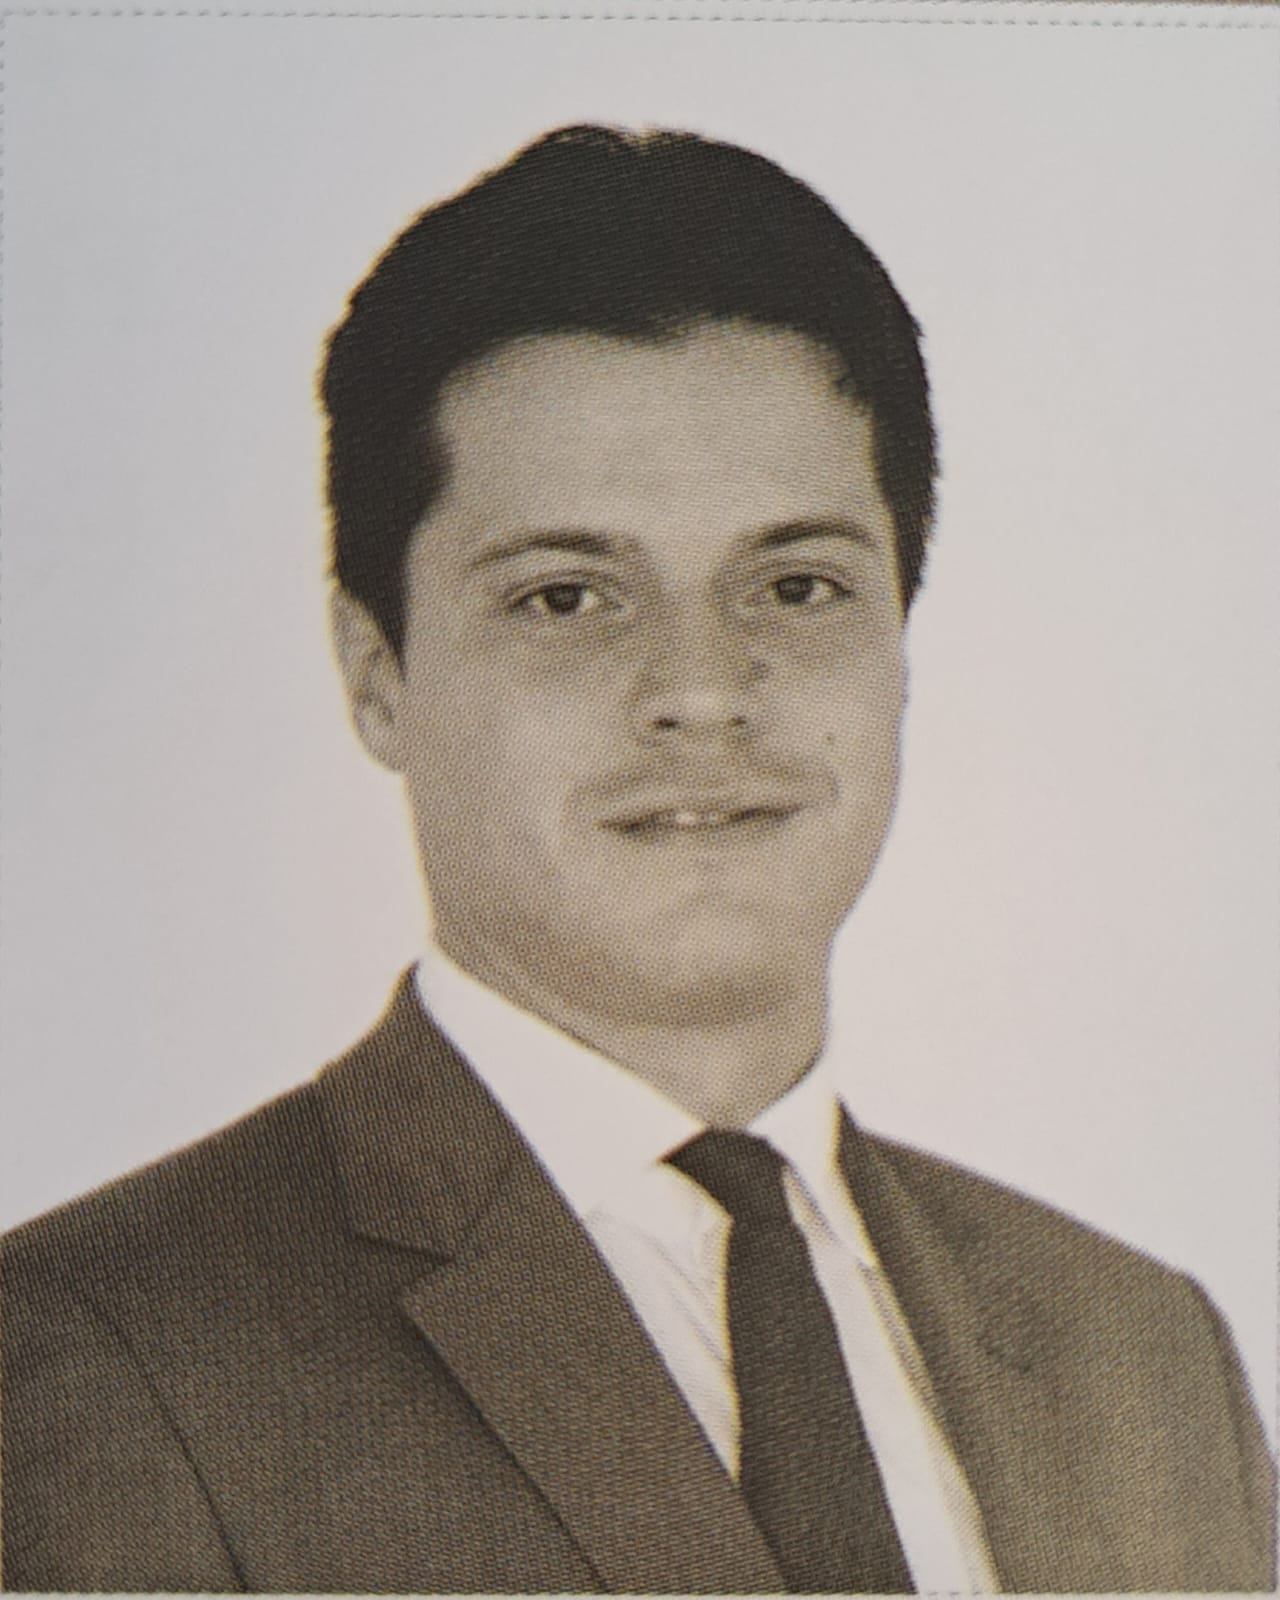 Emanuel José Matias Guerra